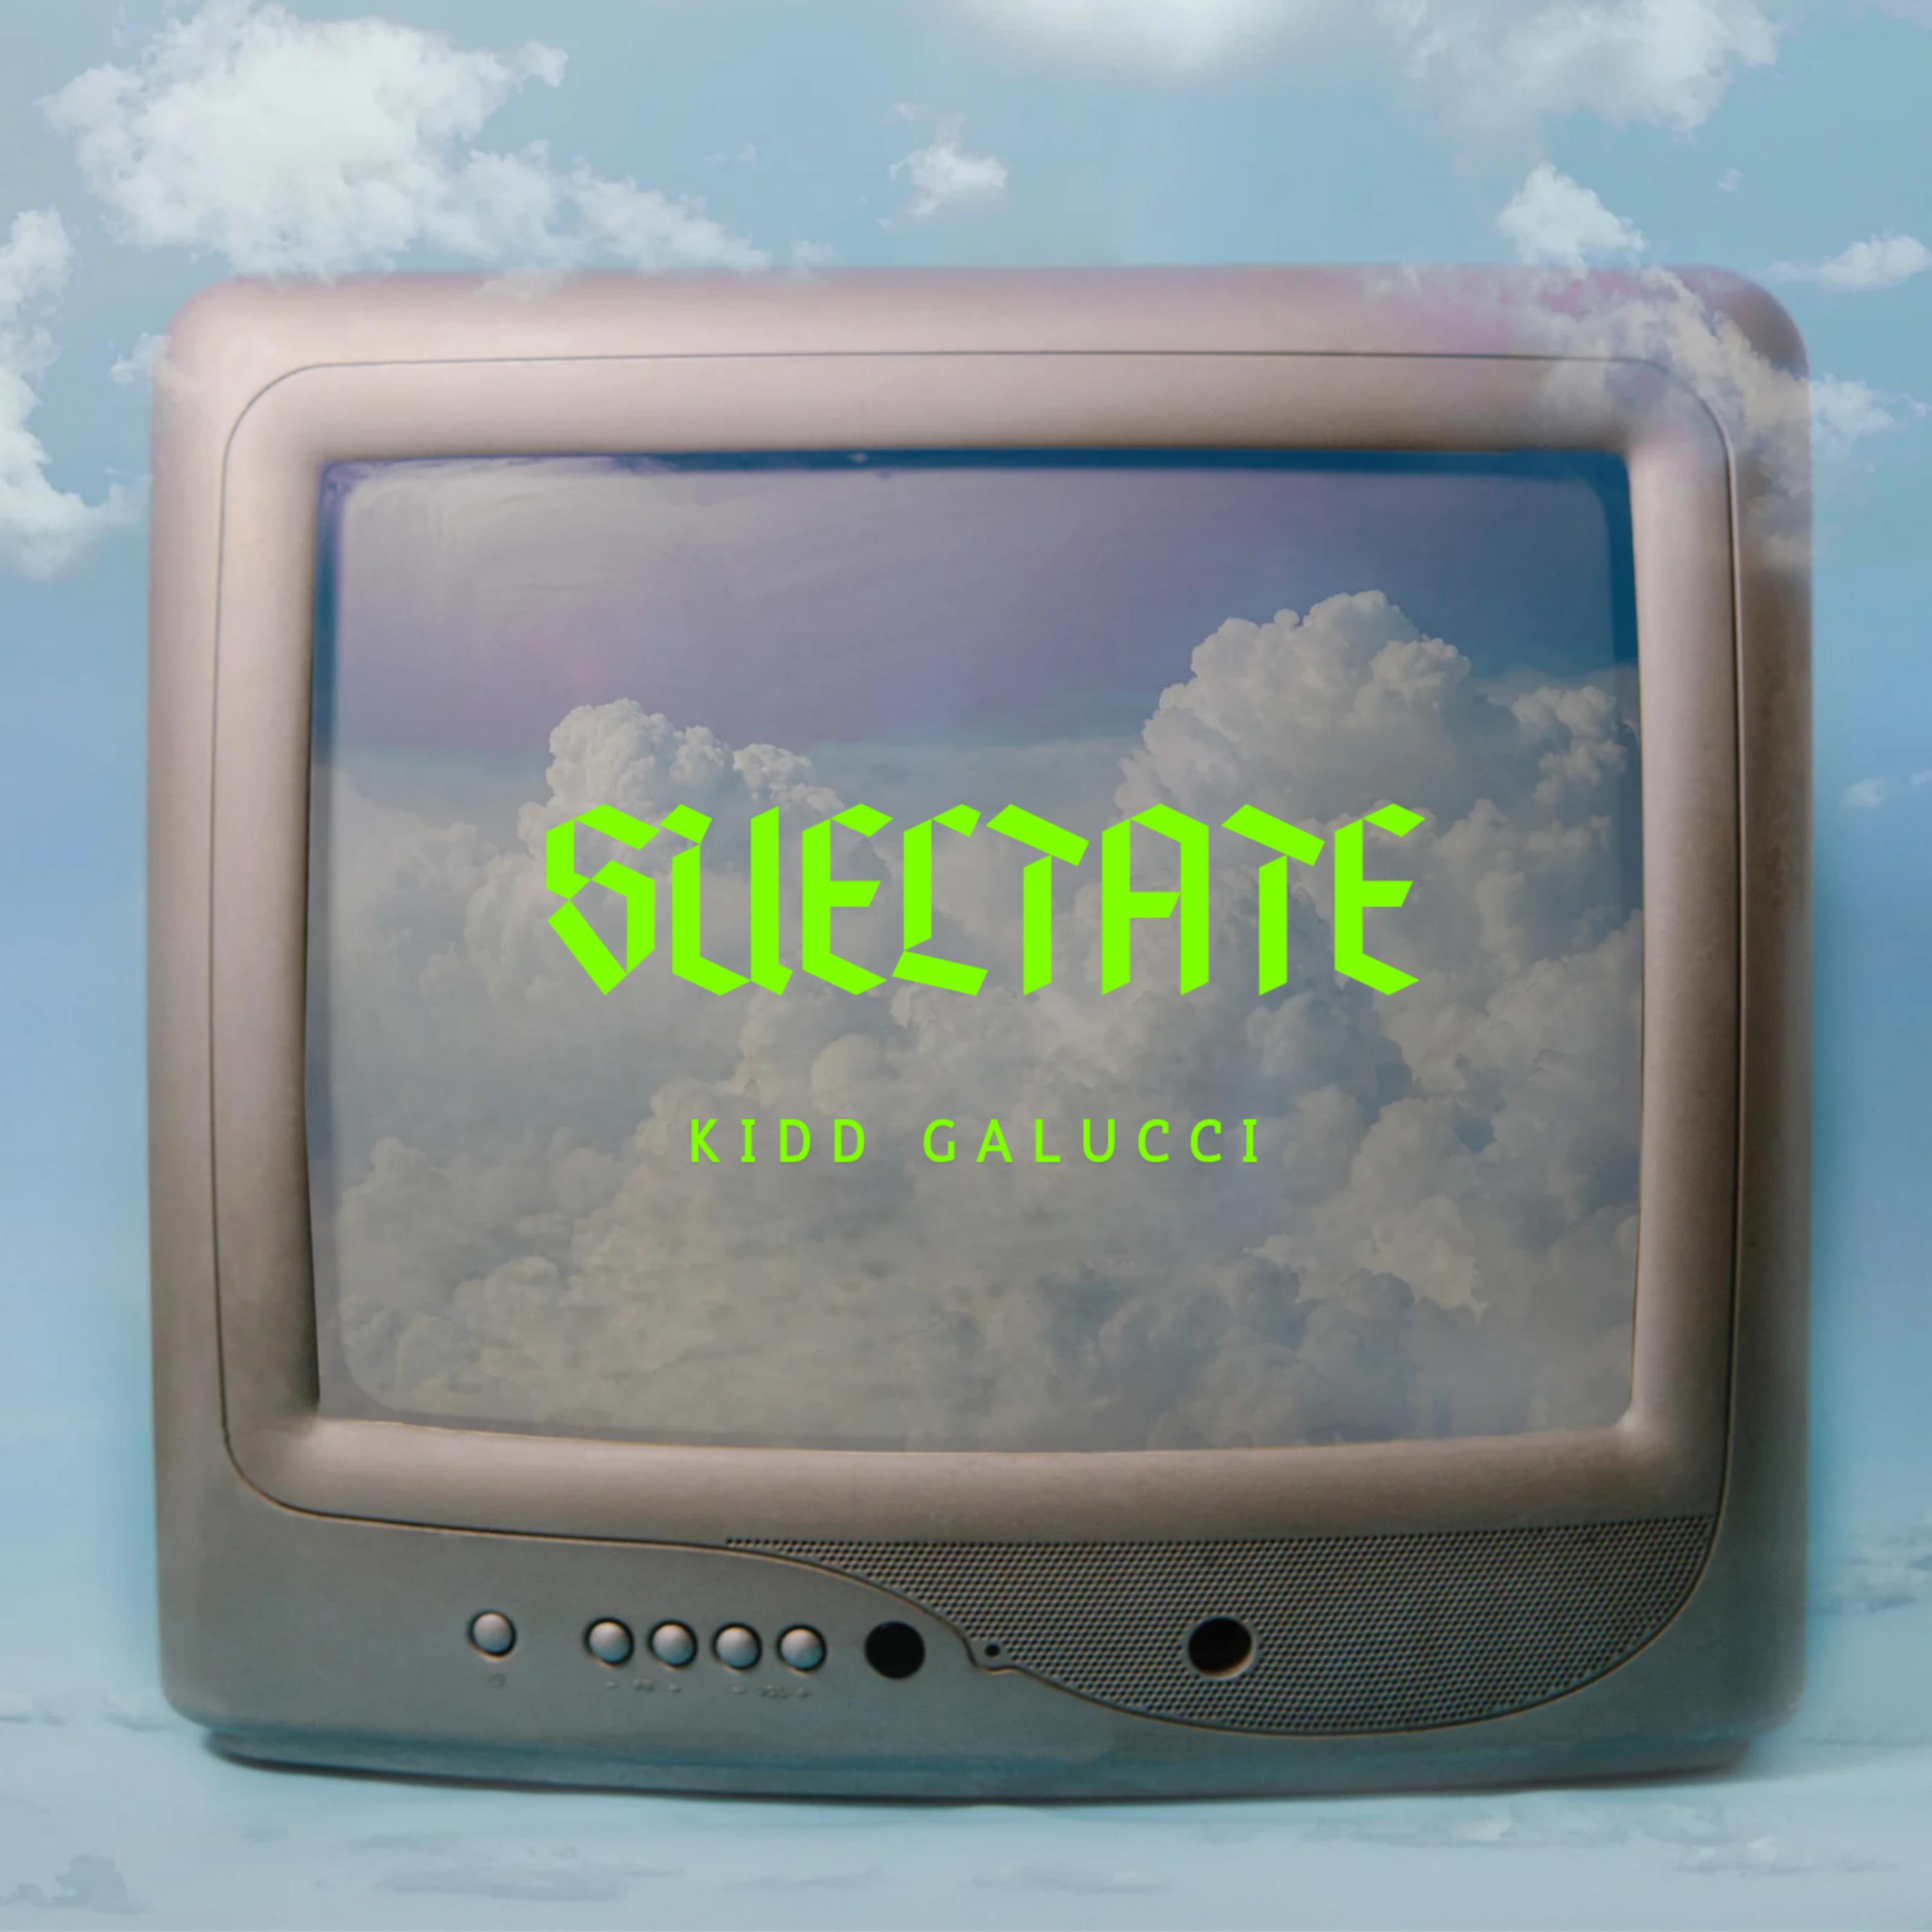 Постер альбома Sueltate